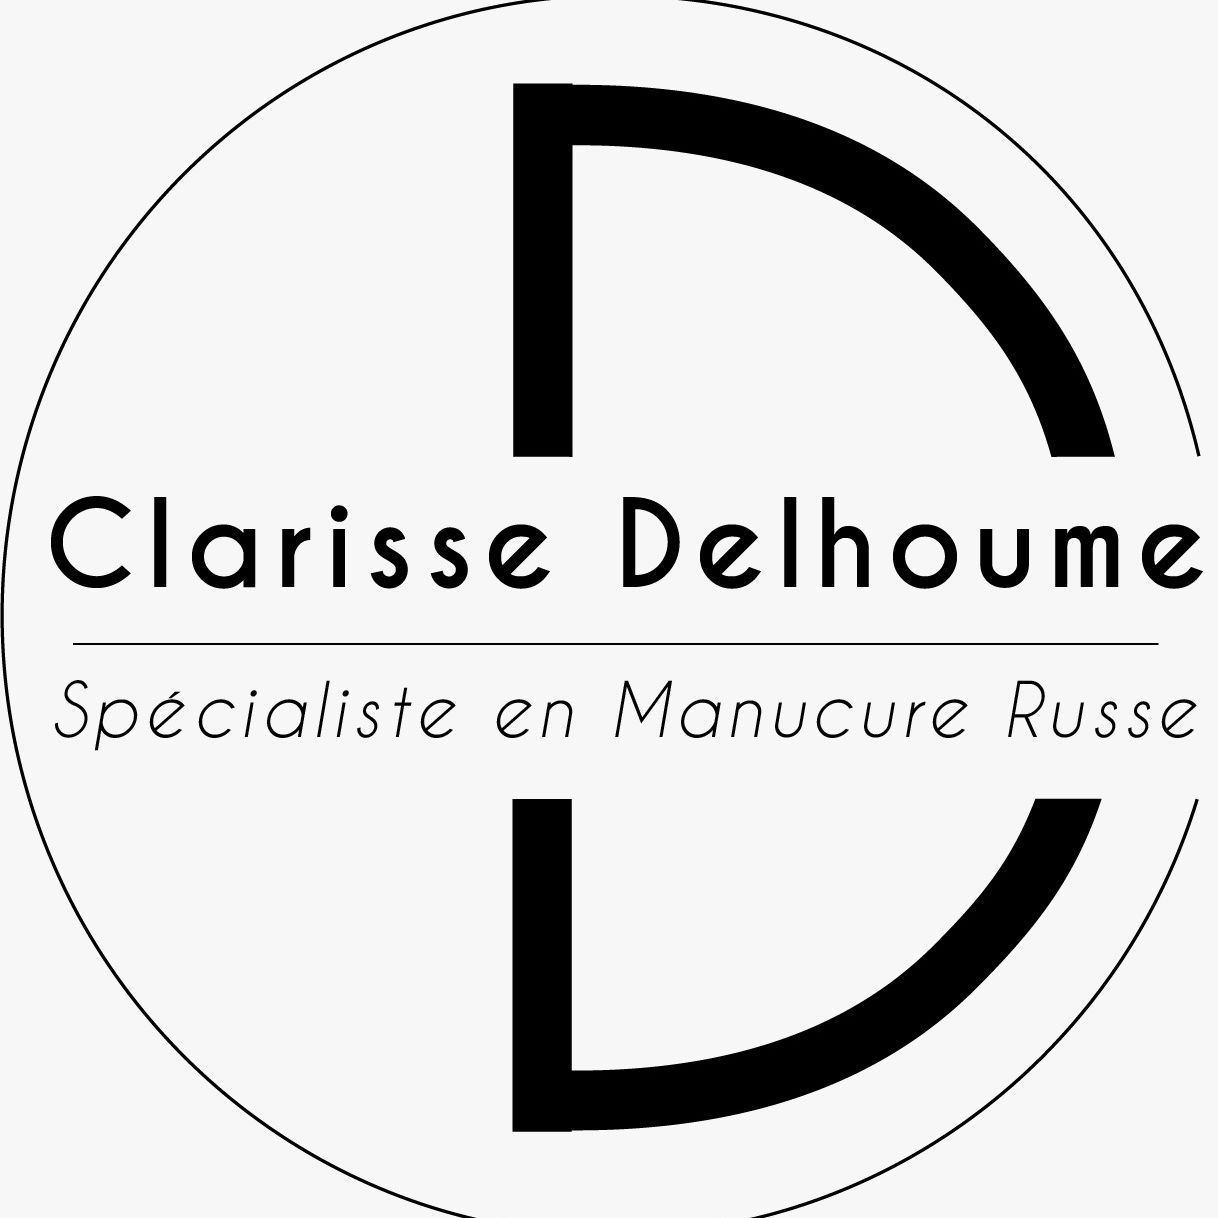 Clarisse Delhoume Manucure Russe, 151 route de Grenoble, 69800, Saint-Priest